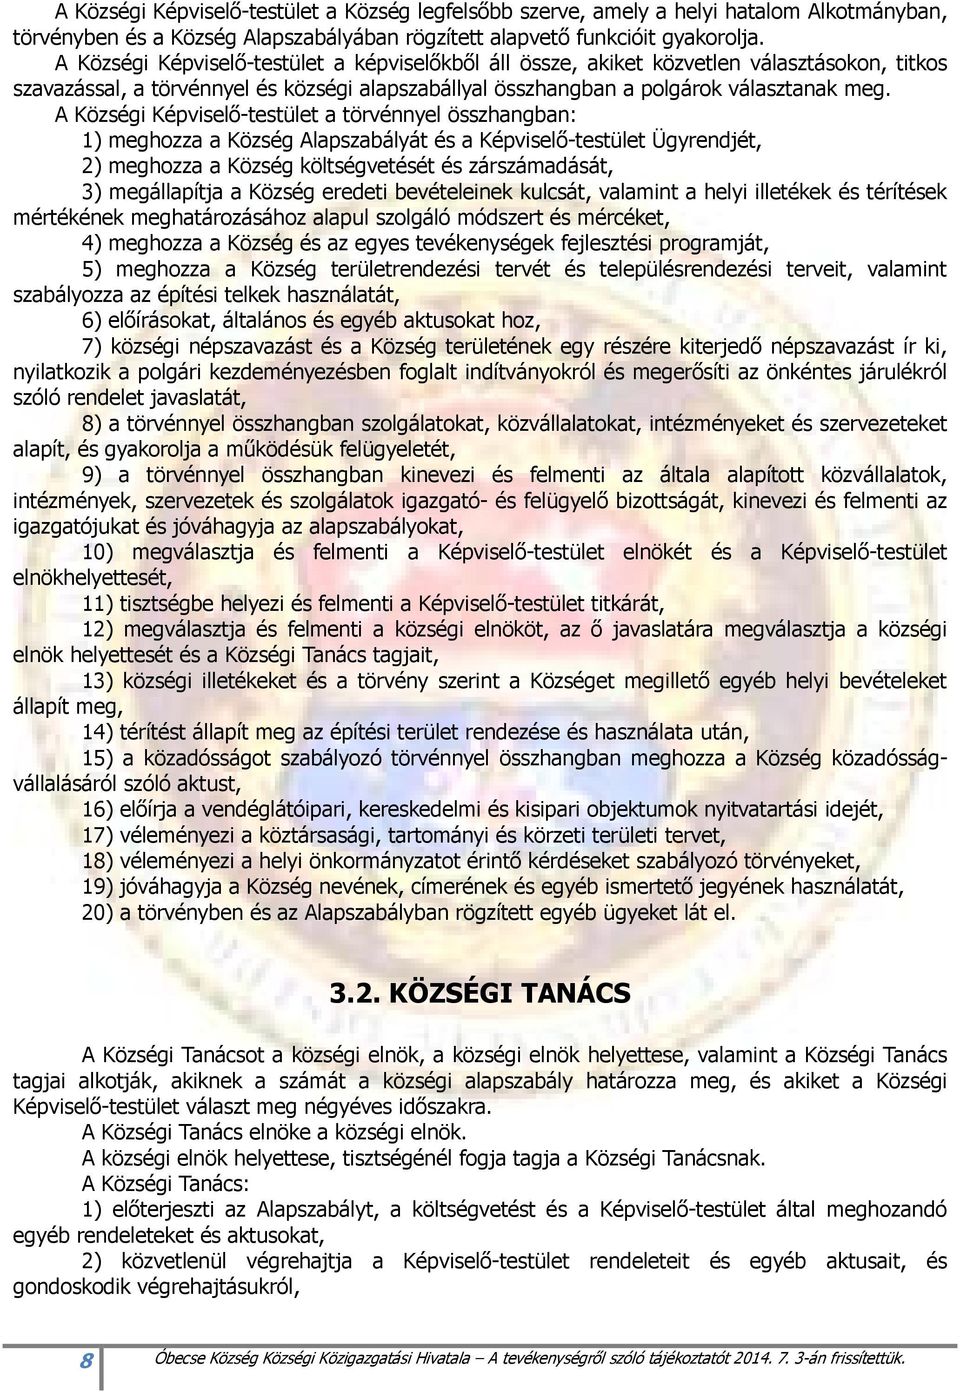 A Községi Képviselı-testület a törvénnyel összhangban: 1) meghozza a Község Alapszabályát és a Képviselı-testület Ügyrendjét, 2) meghozza a Község költségvetését és zárszámadását, 3) megállapítja a